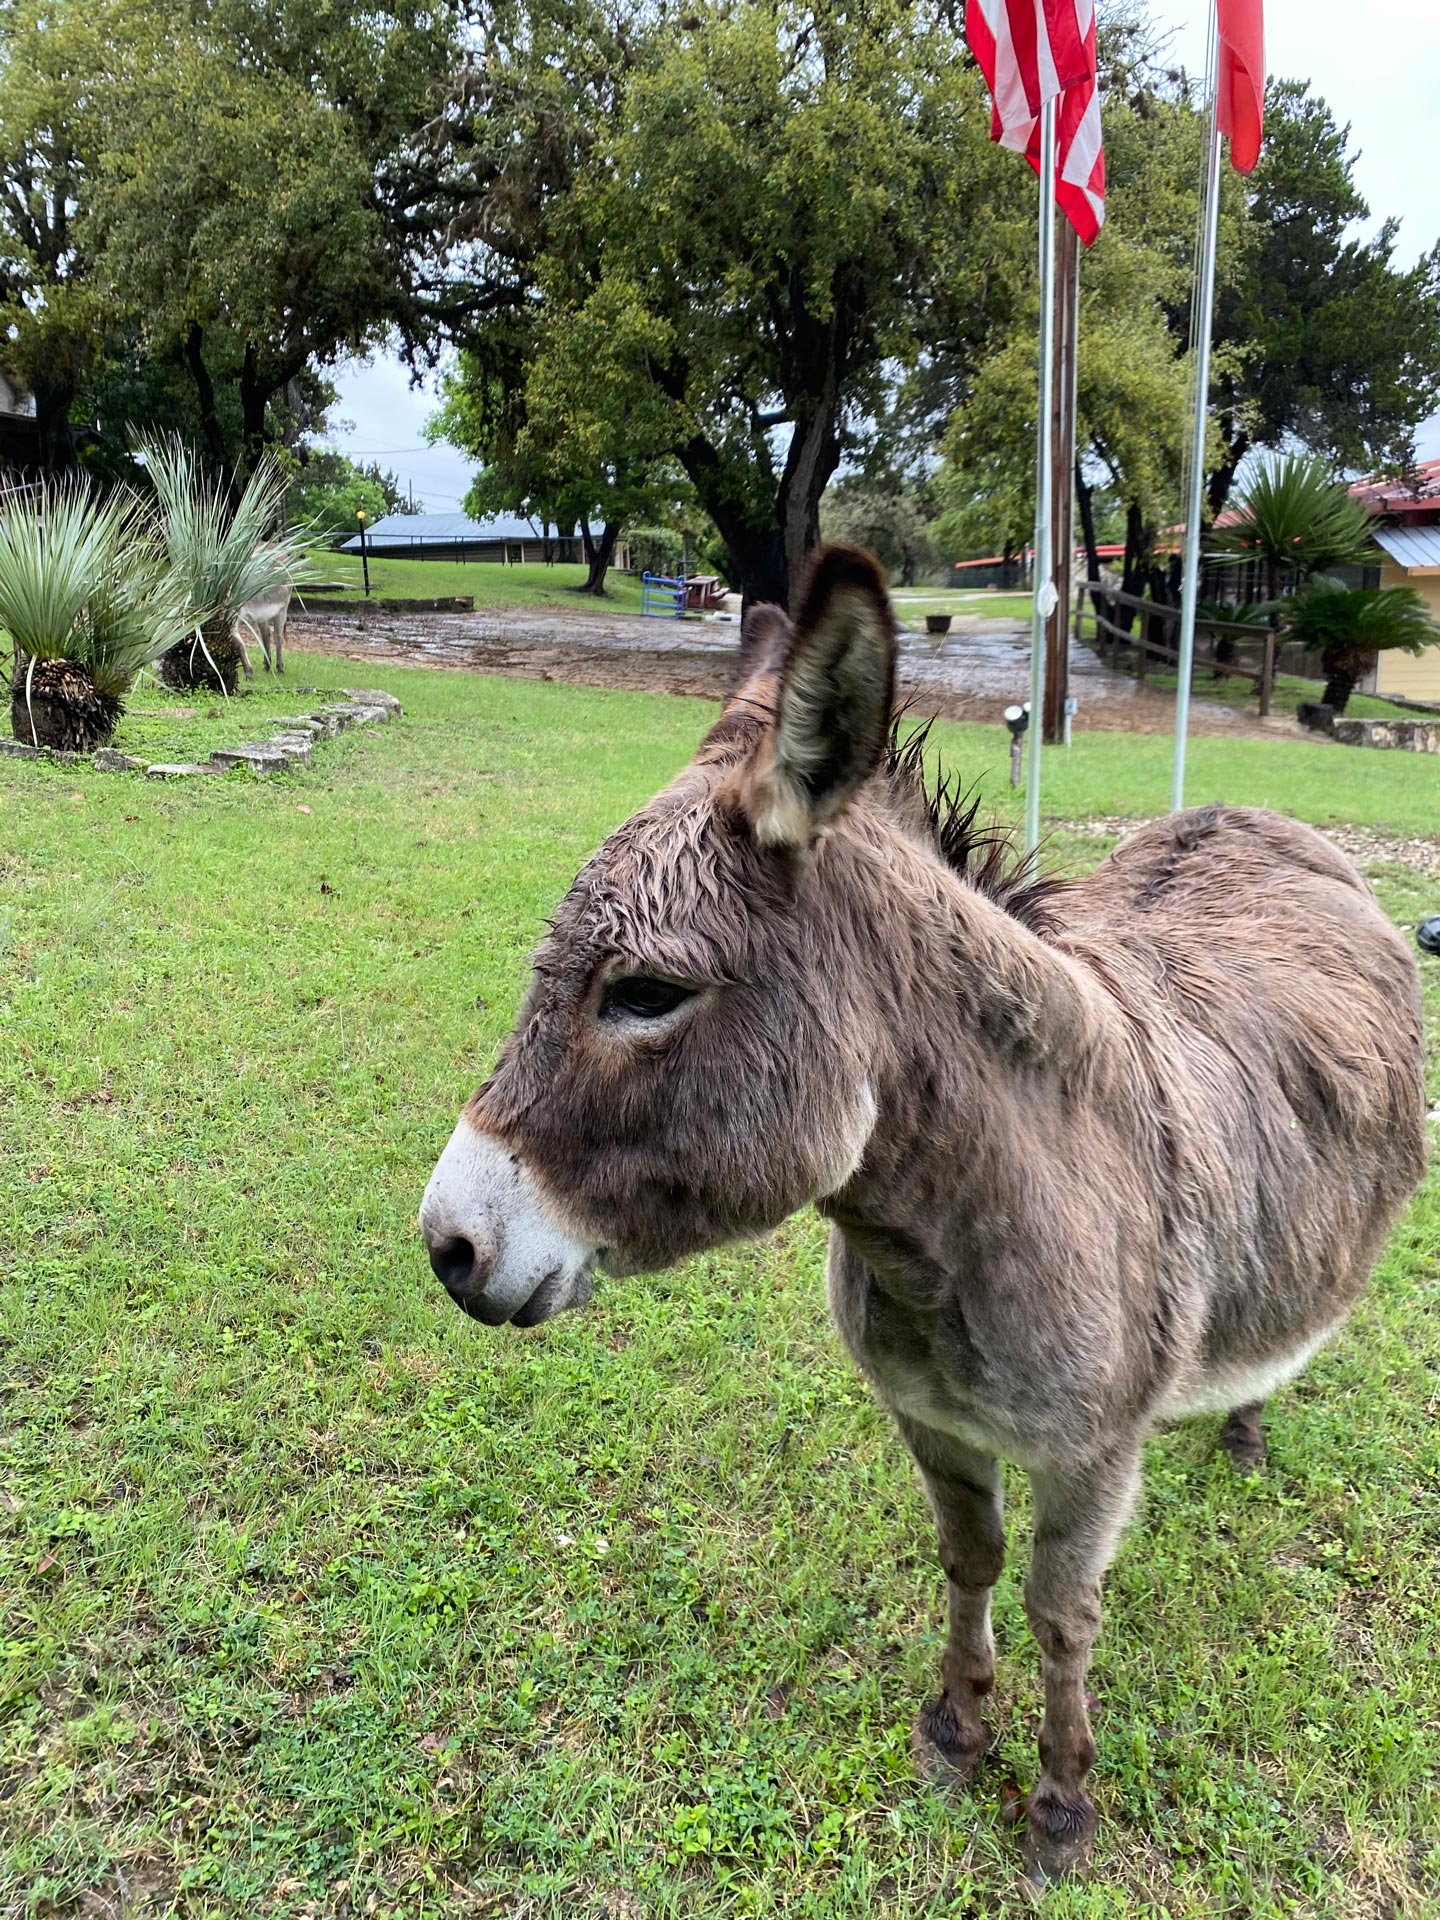 Jill, the donkey